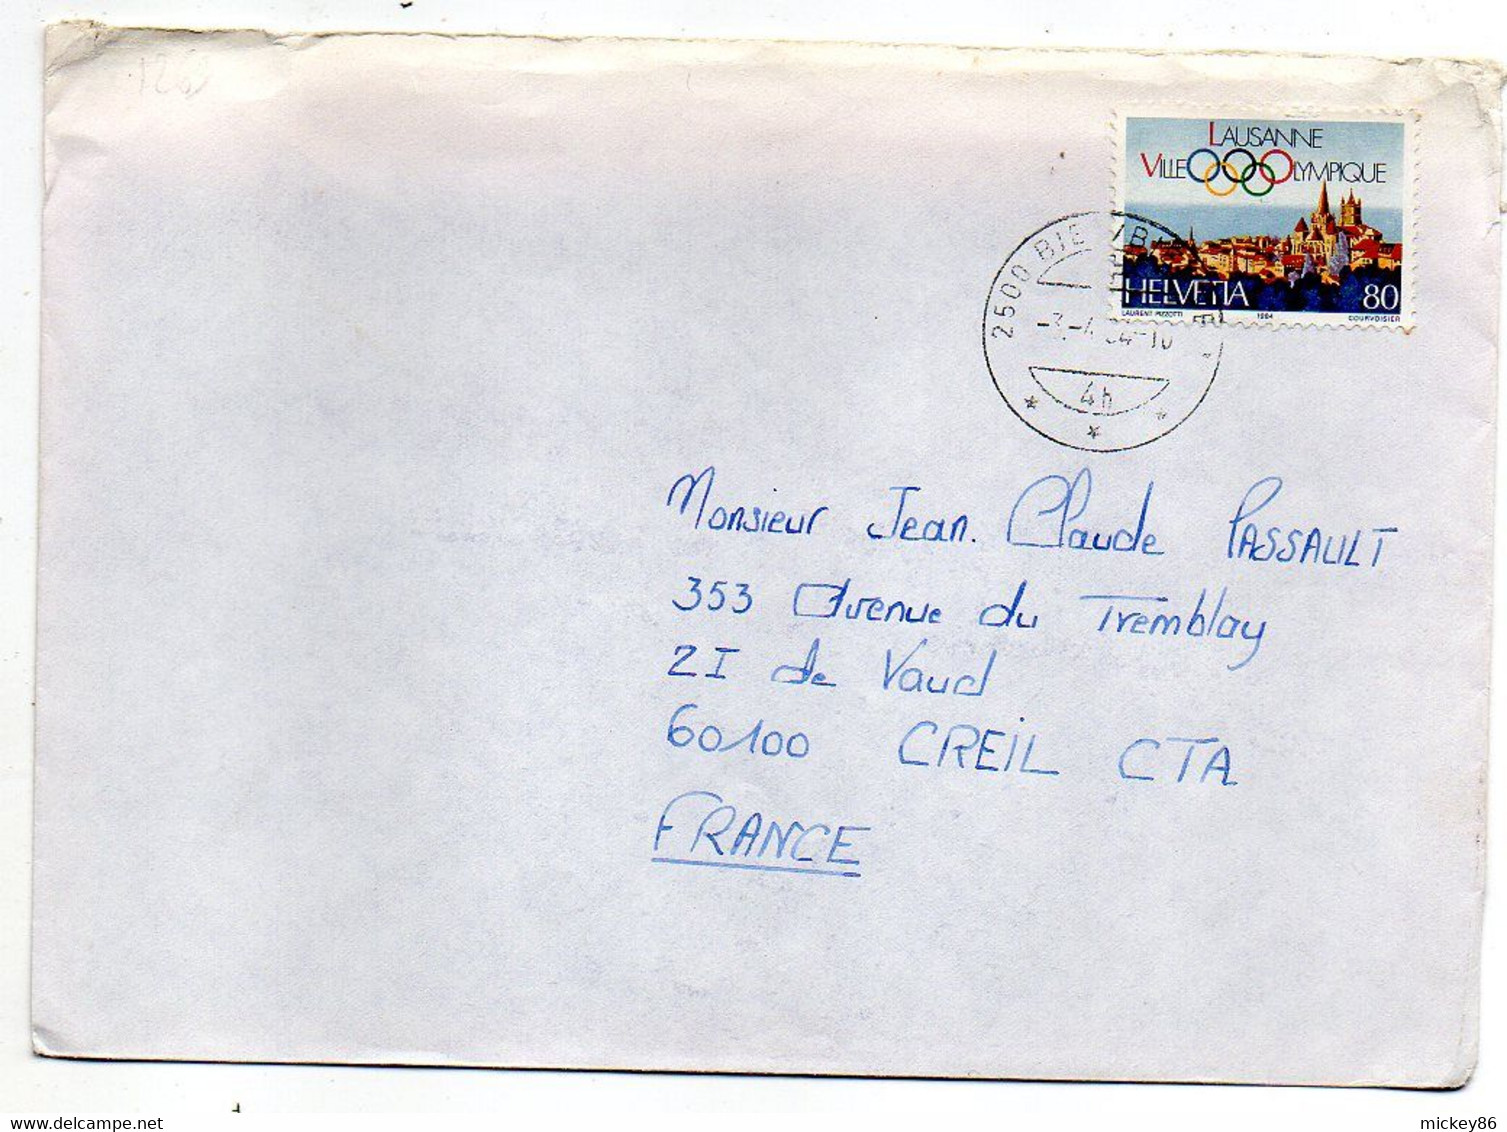 Suisse --1984--Lettre  Pour CREIL-60 (France).. Timbre Lausanne Ville Olympique ...cachet. - Covers & Documents